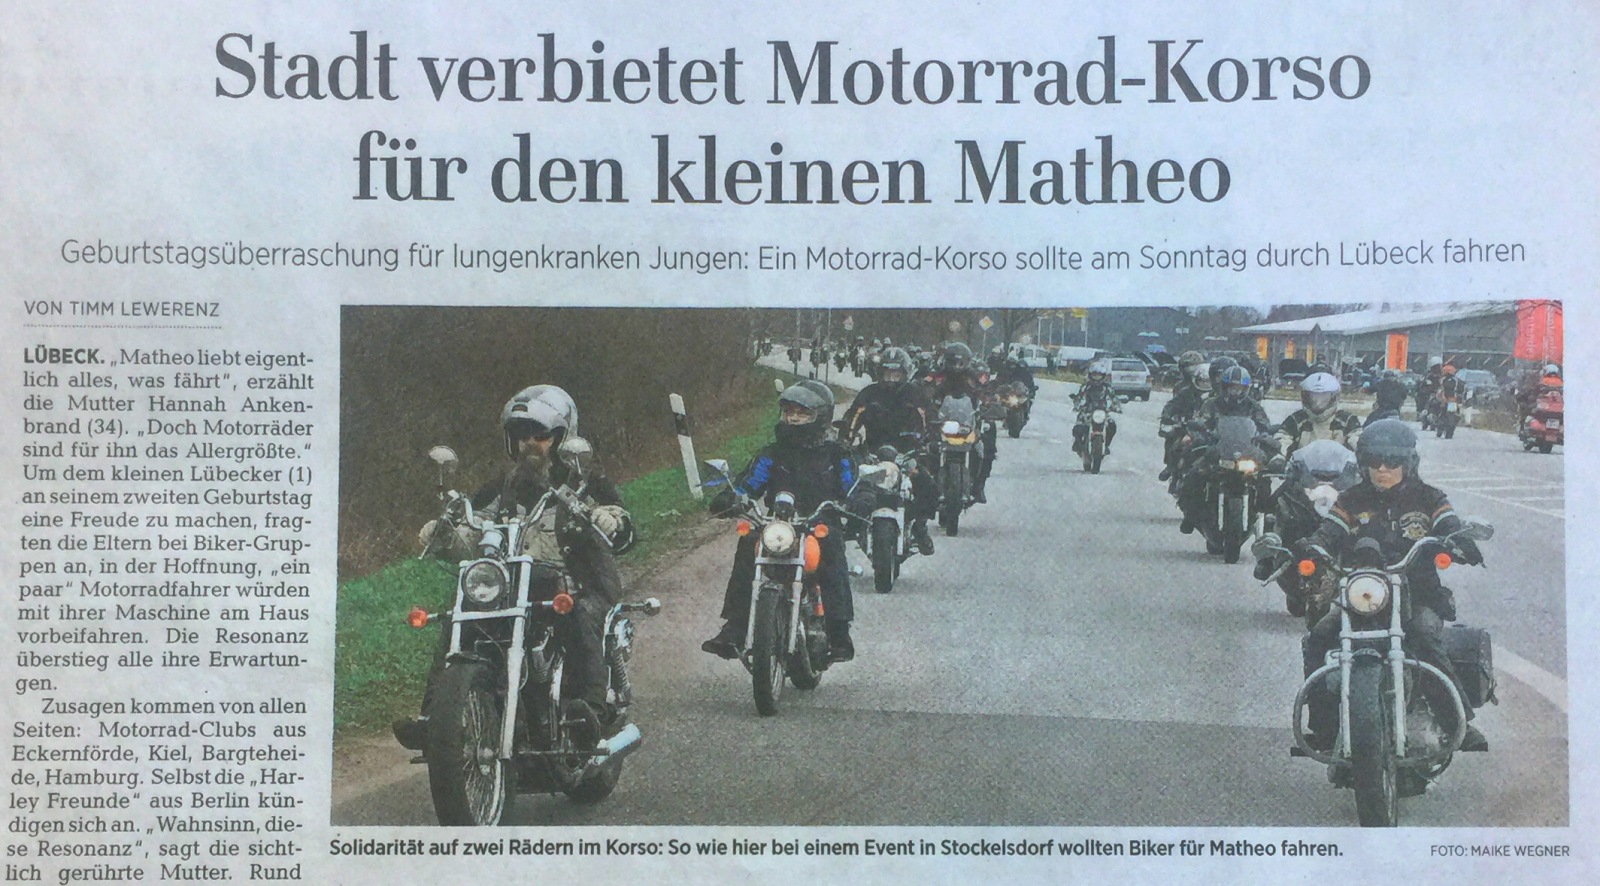 Zeitungs-Schlagzeile über einen verbotenen Motorrad-Korso